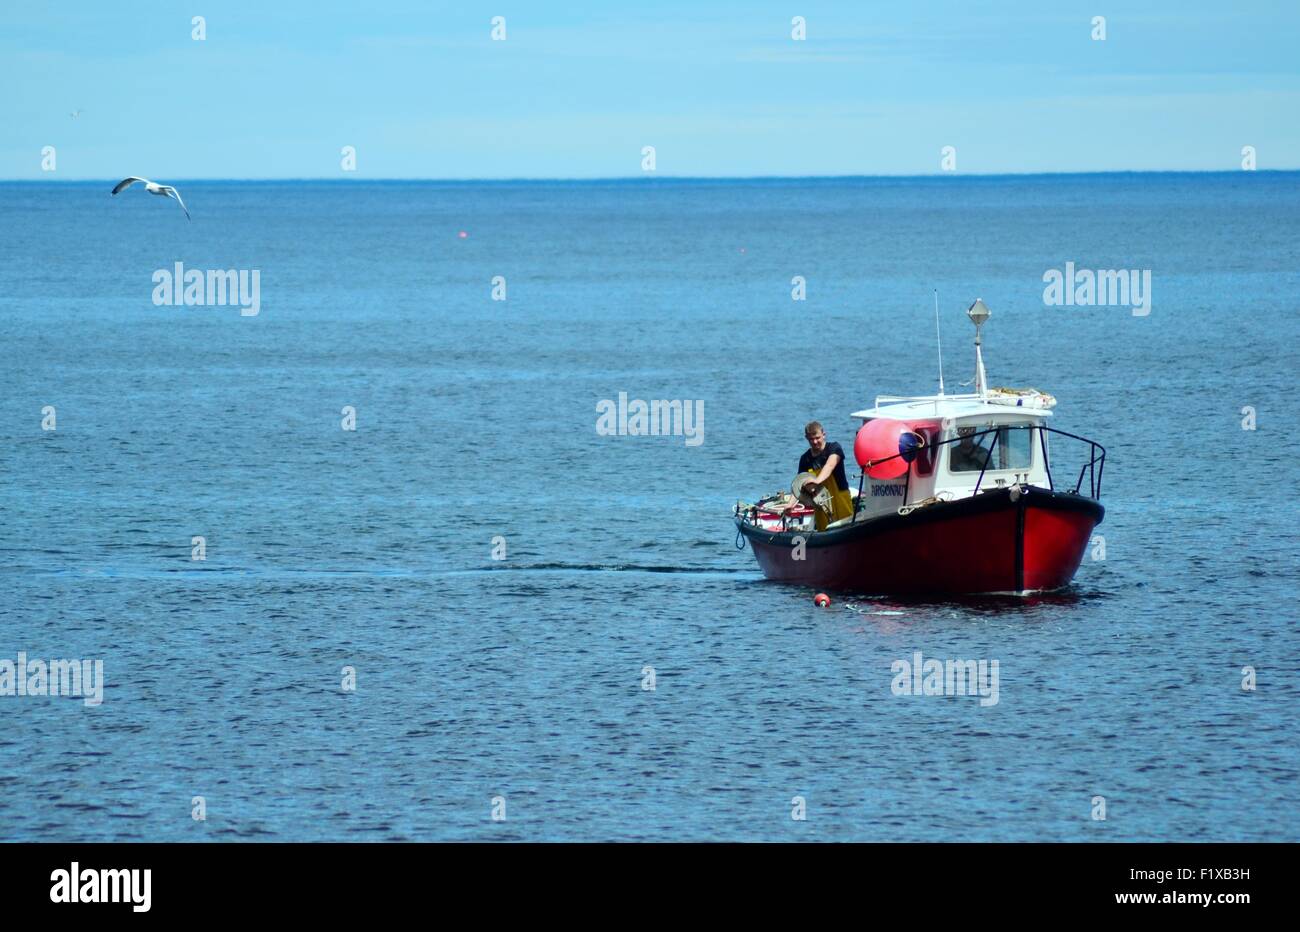 Fishing boat at sea Stock Photo